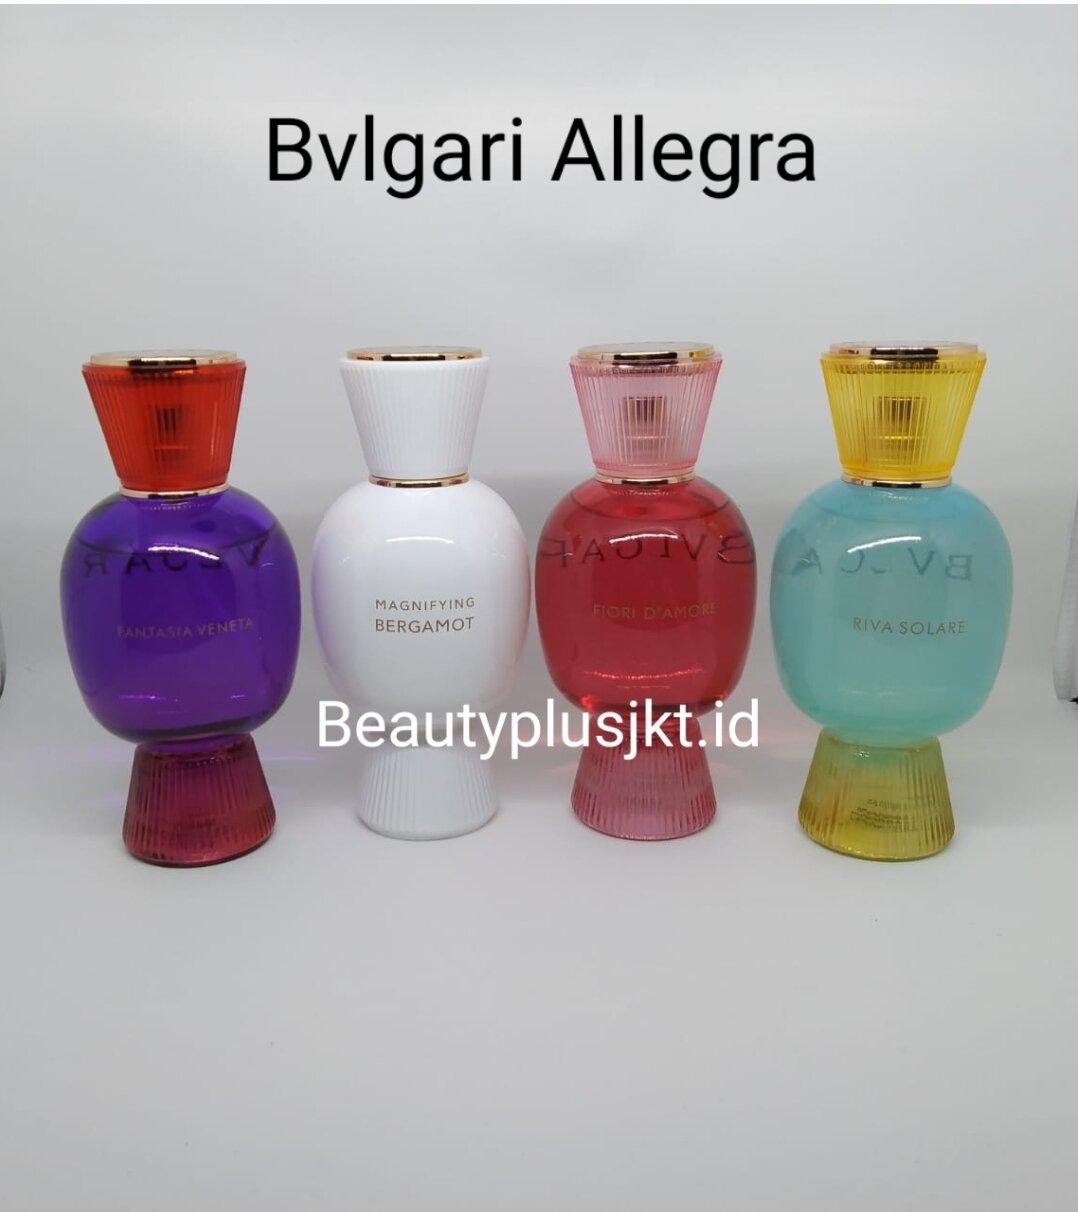 BVLGARI Allegra Fantasia Veneta Eau de Parfum 41243